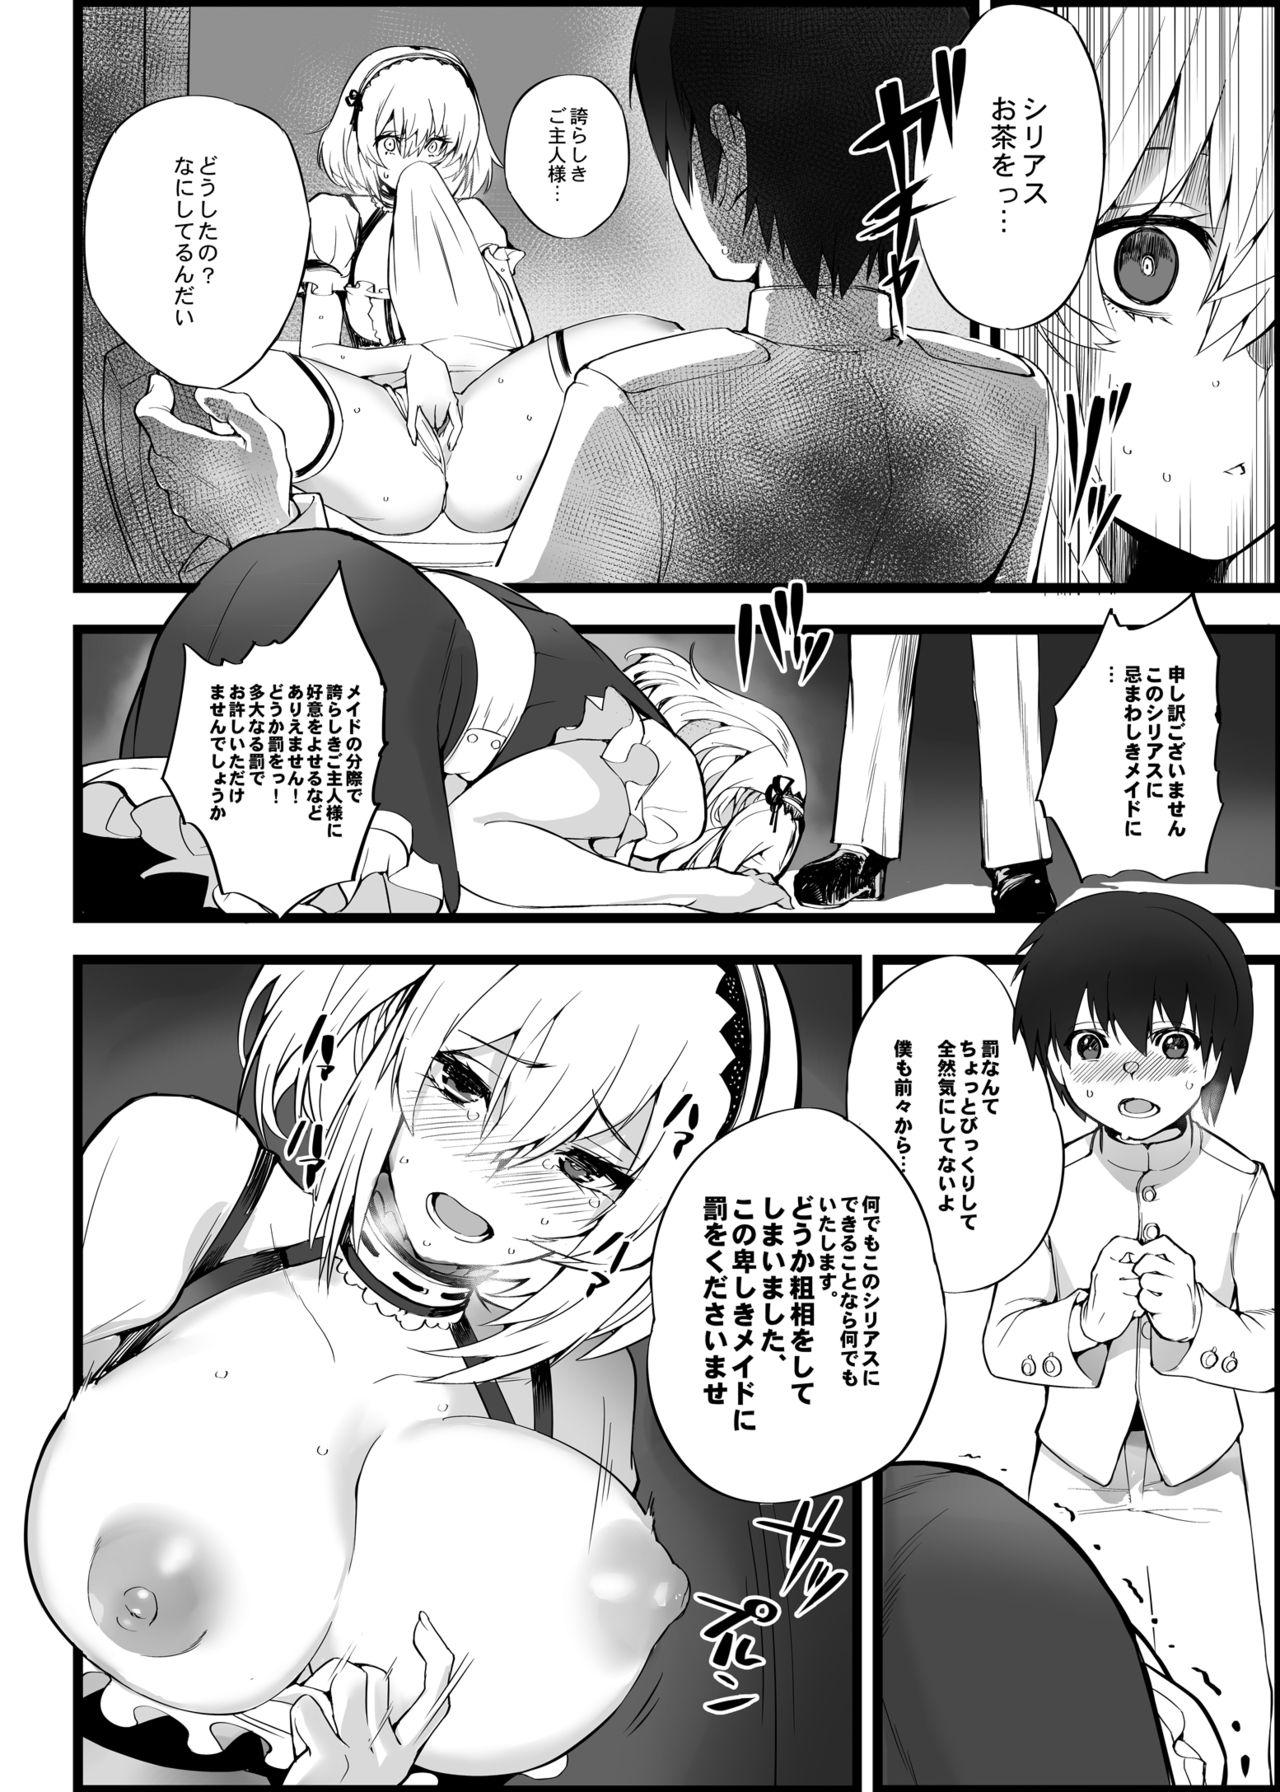 Underwear Mukakin Shirei ni Yubiwa o Kawaseru Saigo no Houhou 5 - Azur lane Dominant - Page 5